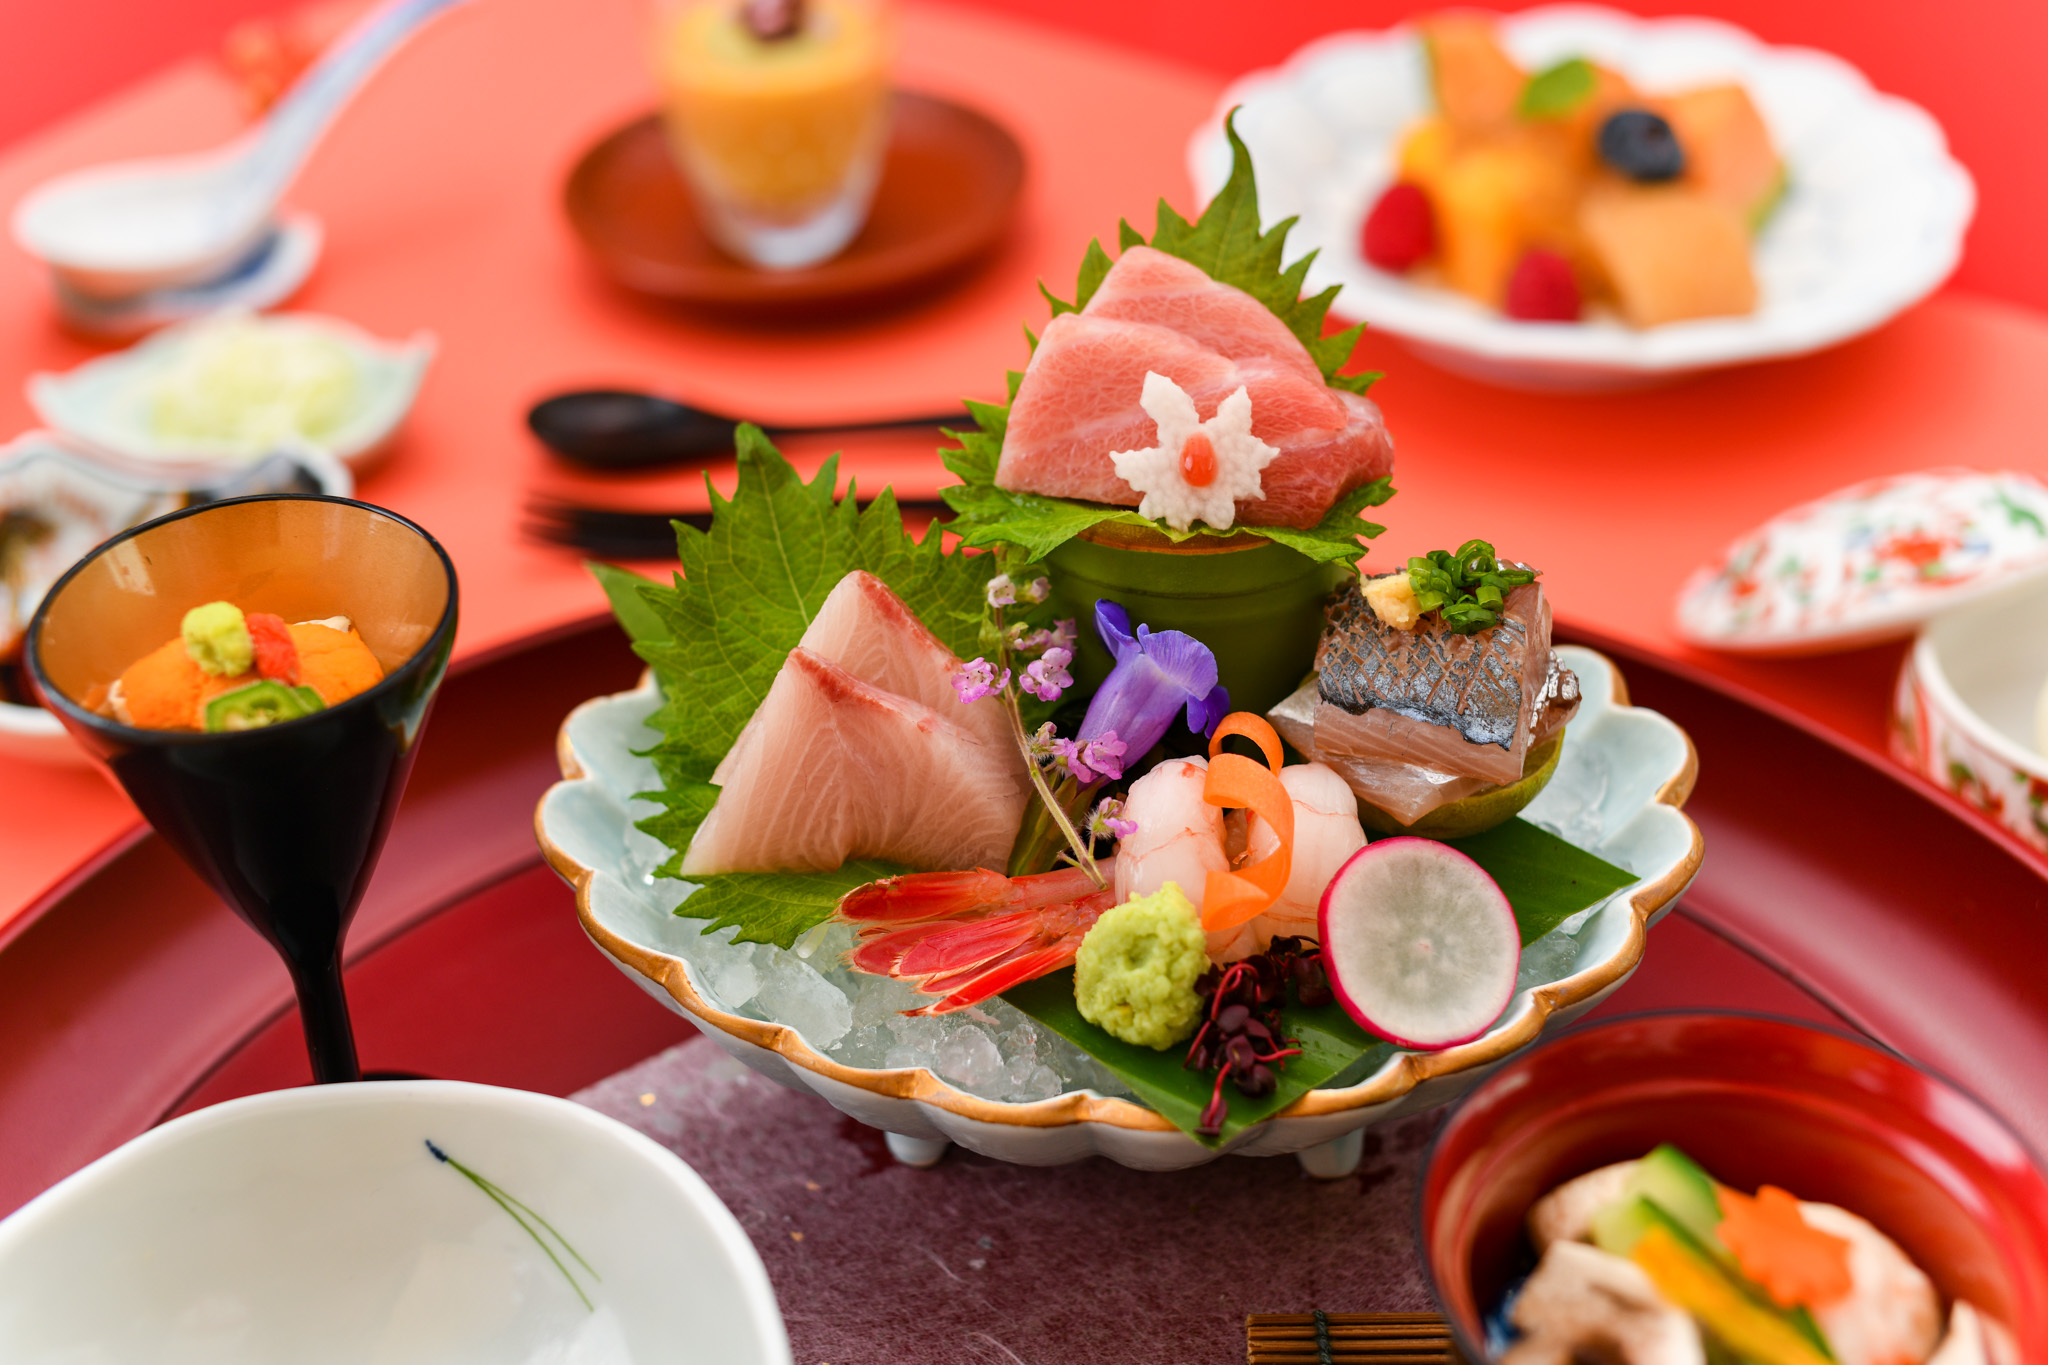 ห้องอาหาร ยามาซาโตะ ขอแนะนำเมนูสุดพิเศษในช่วงต้นฤดูร้อนของประเทศญี่ปุ่น